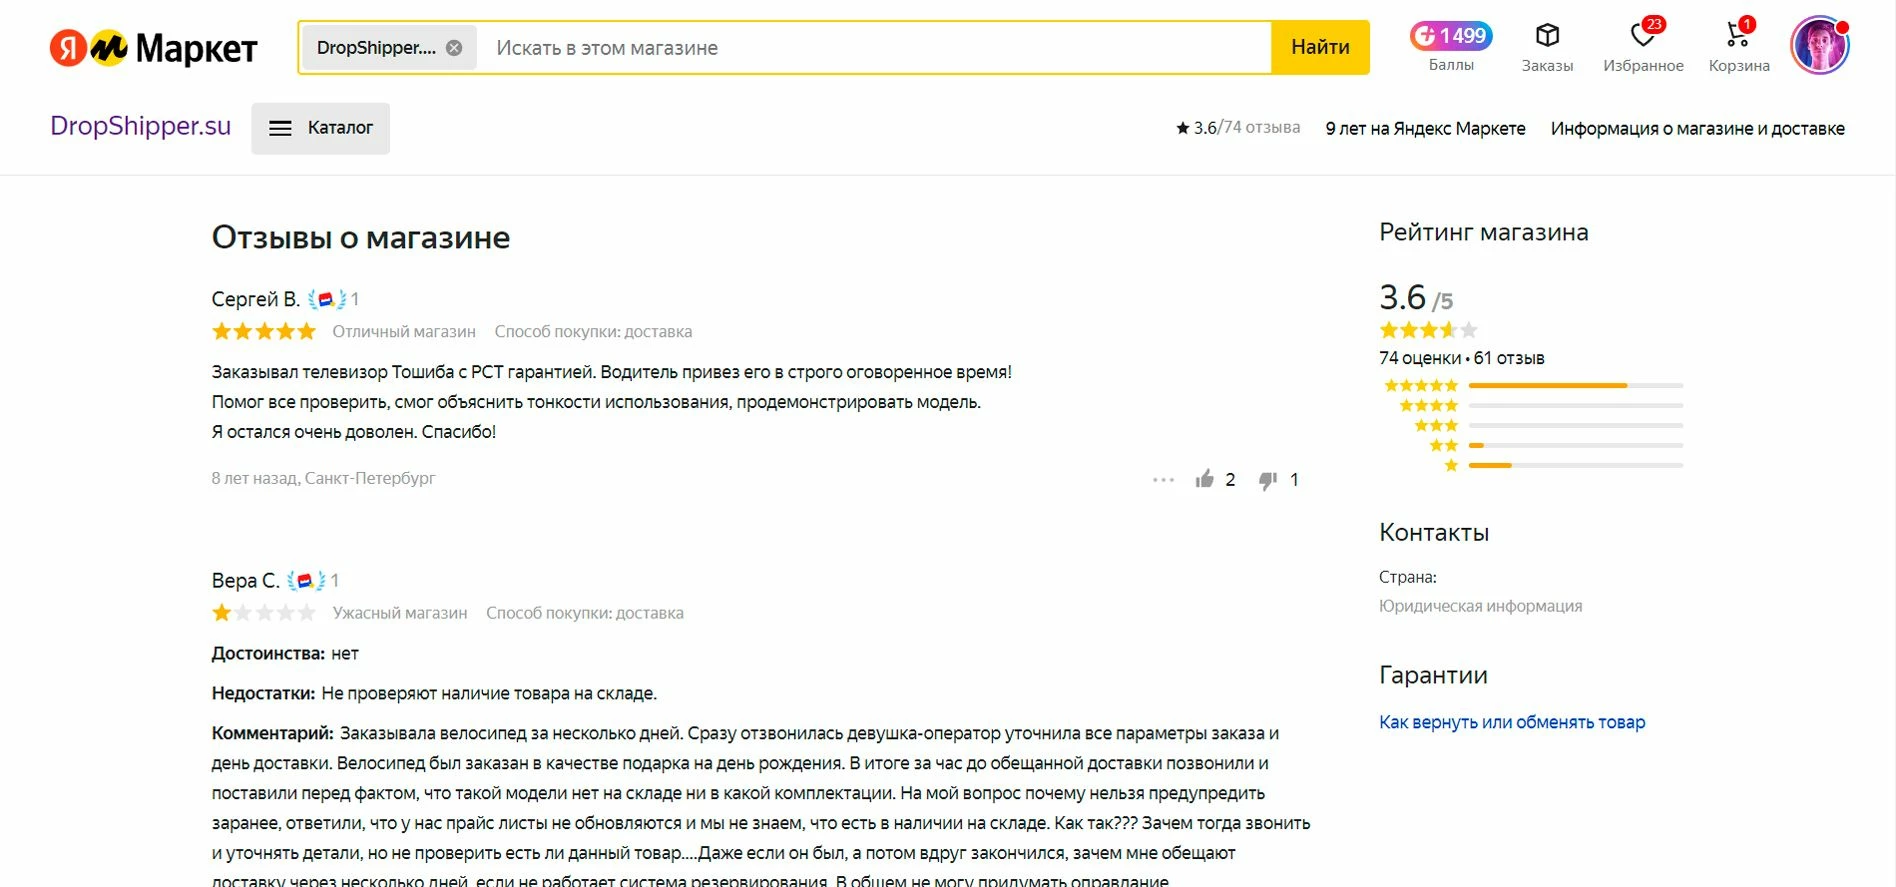 Дропшиппинг в Яндекс.маркете